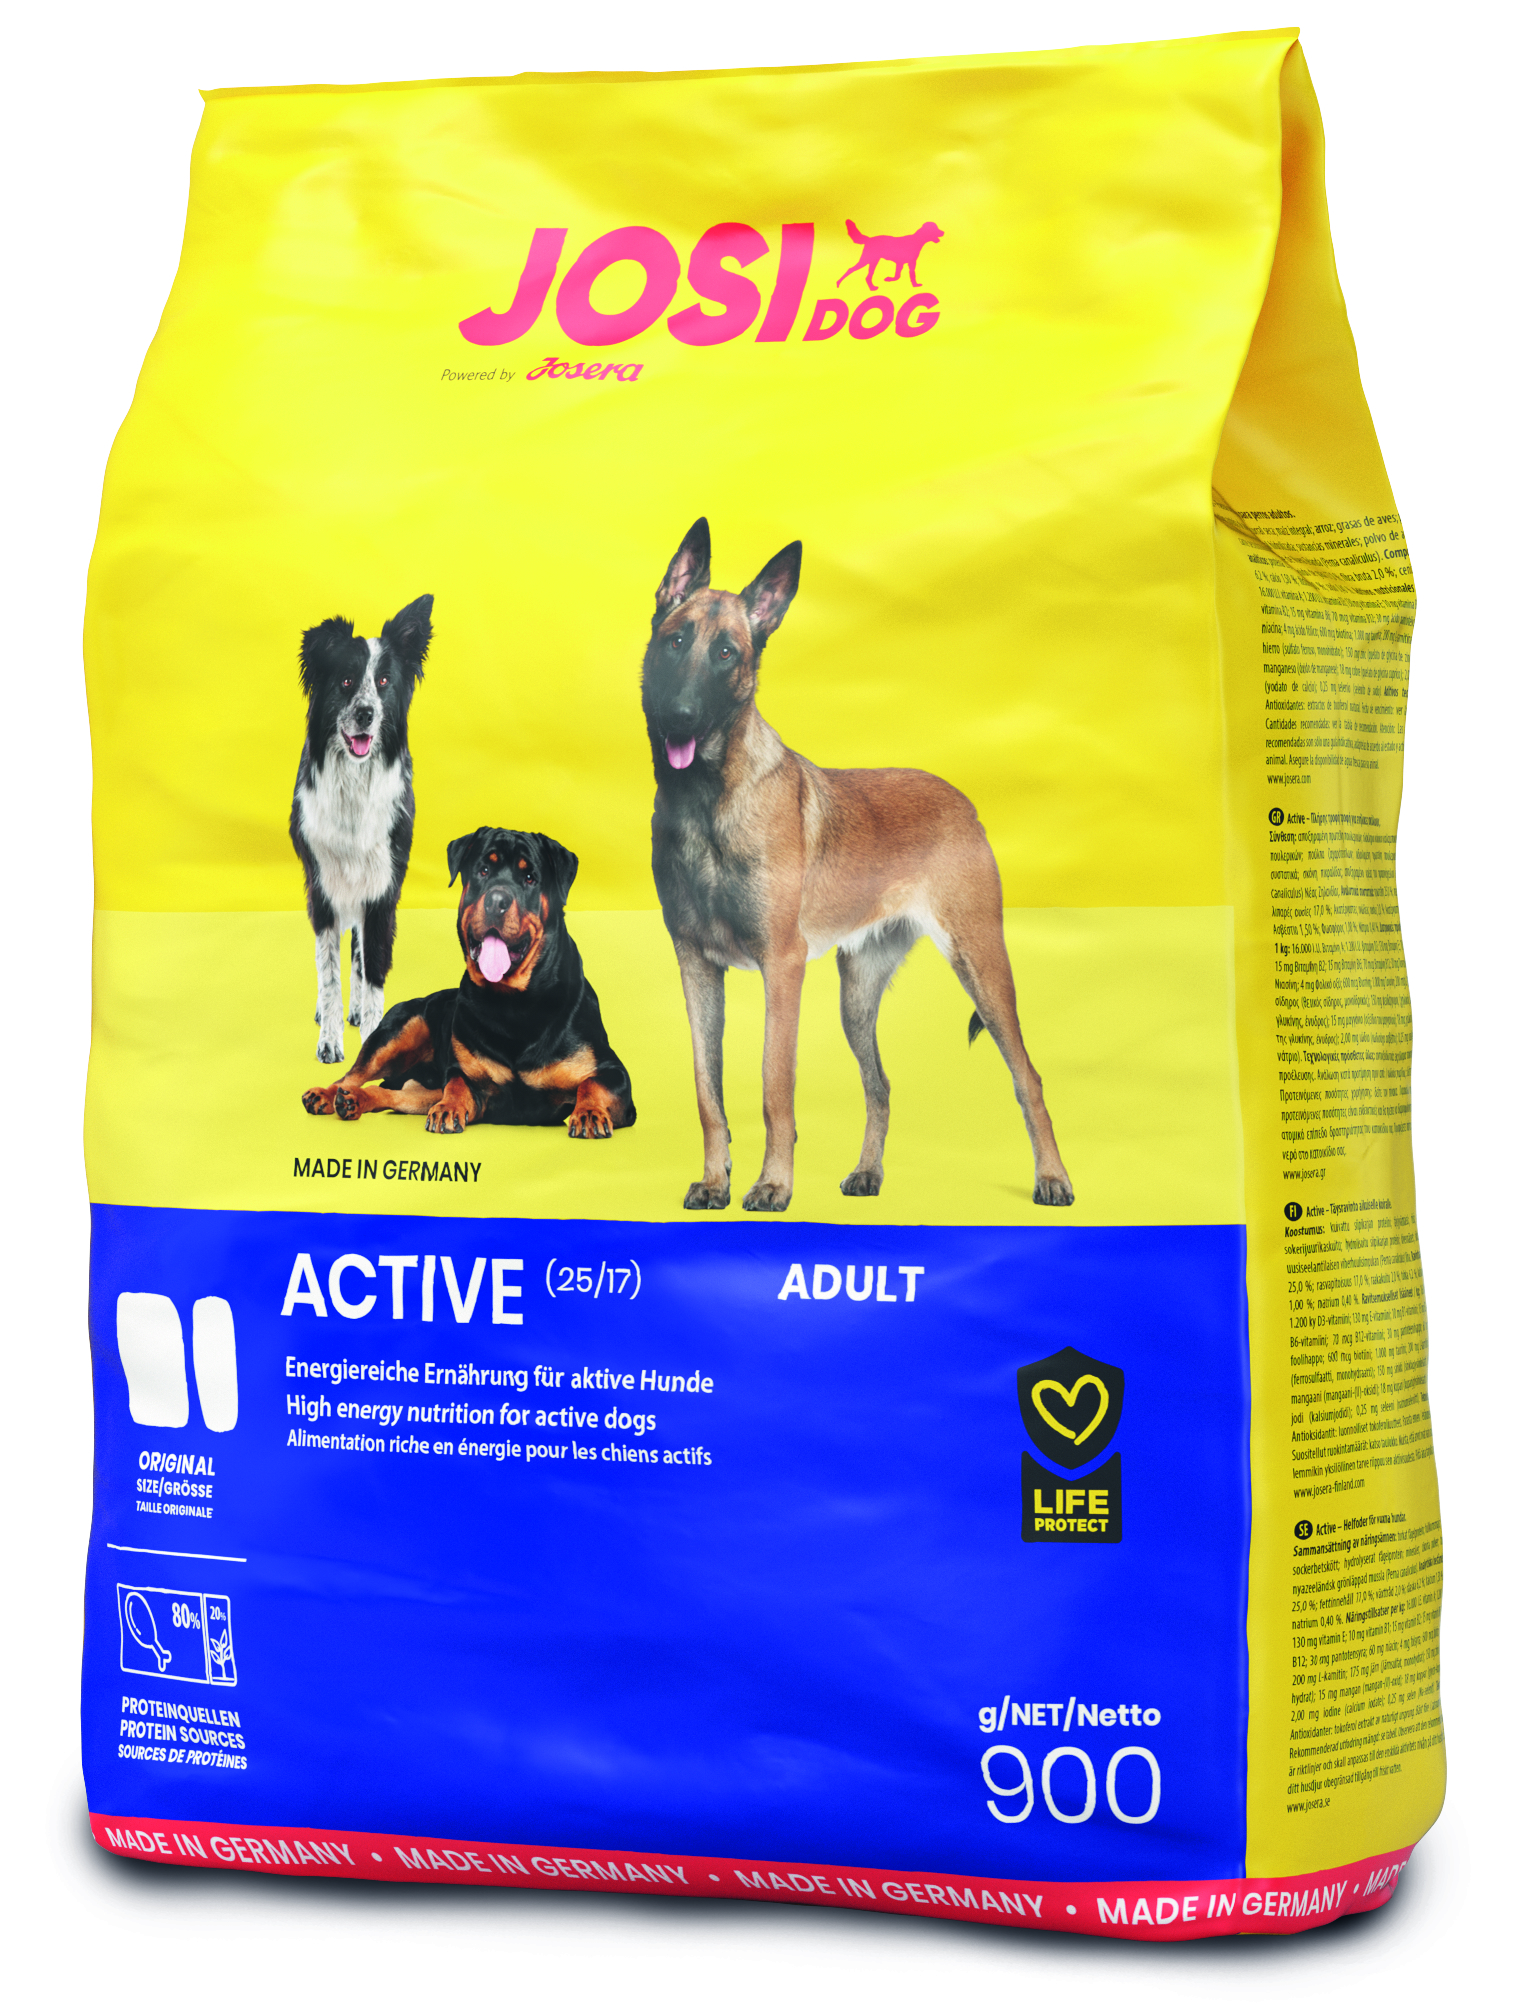 JosiDog Active - Das energiereiche Menü für aktive Hunde 900g